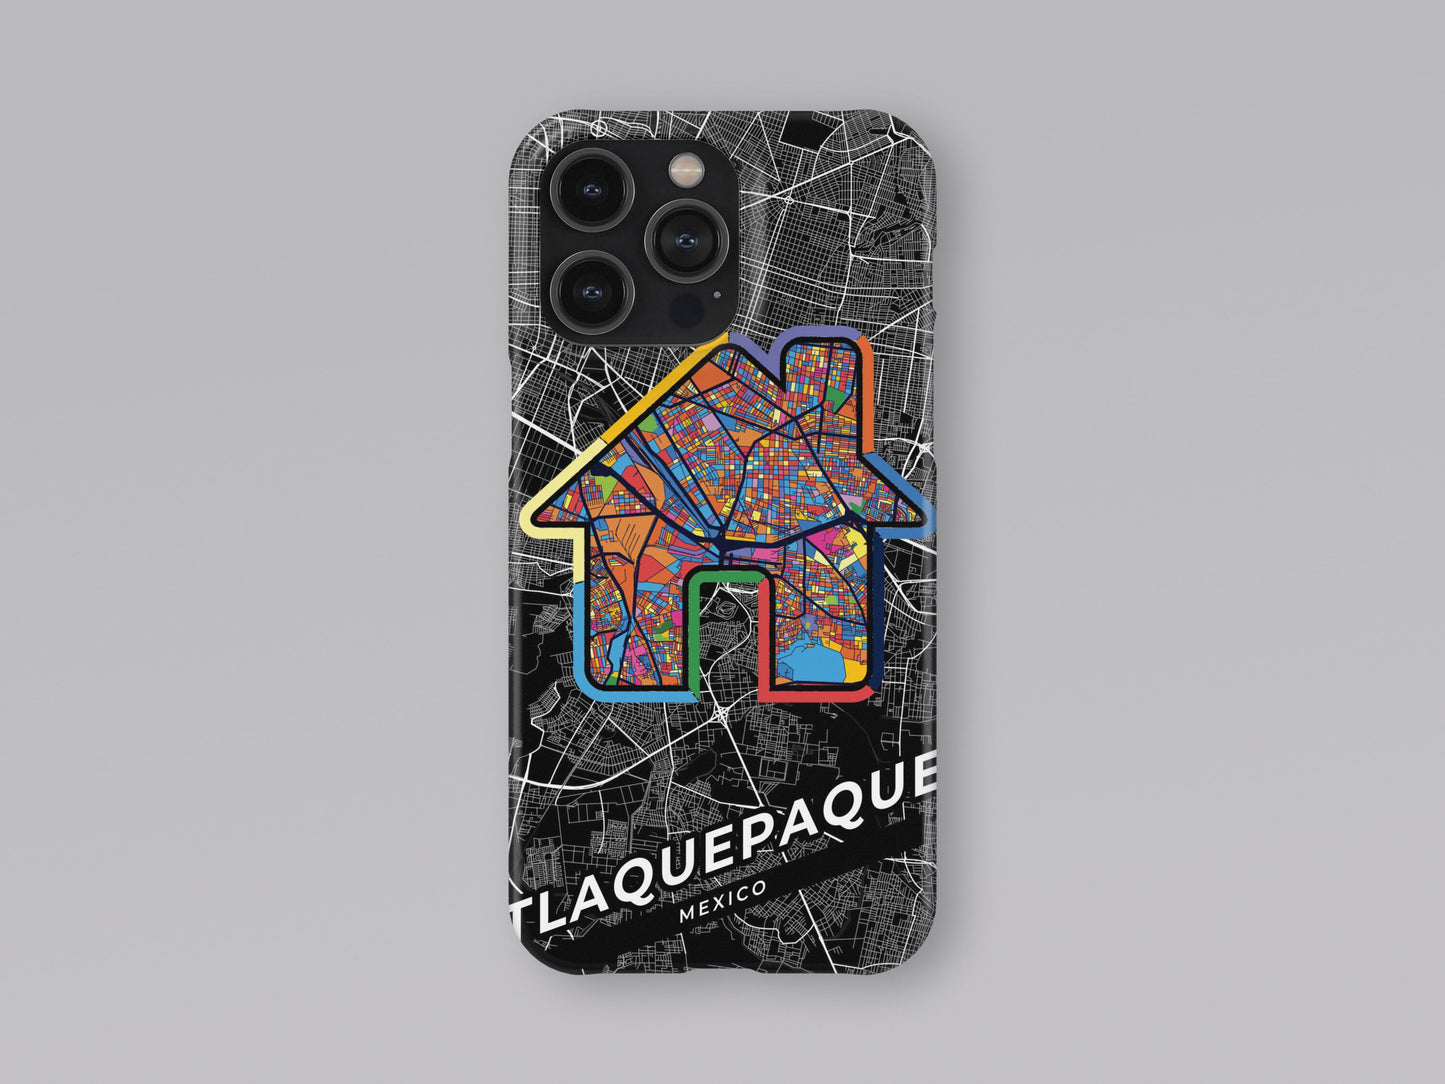 Tlaquepaque Mexico slim phone case with colorful icon 3